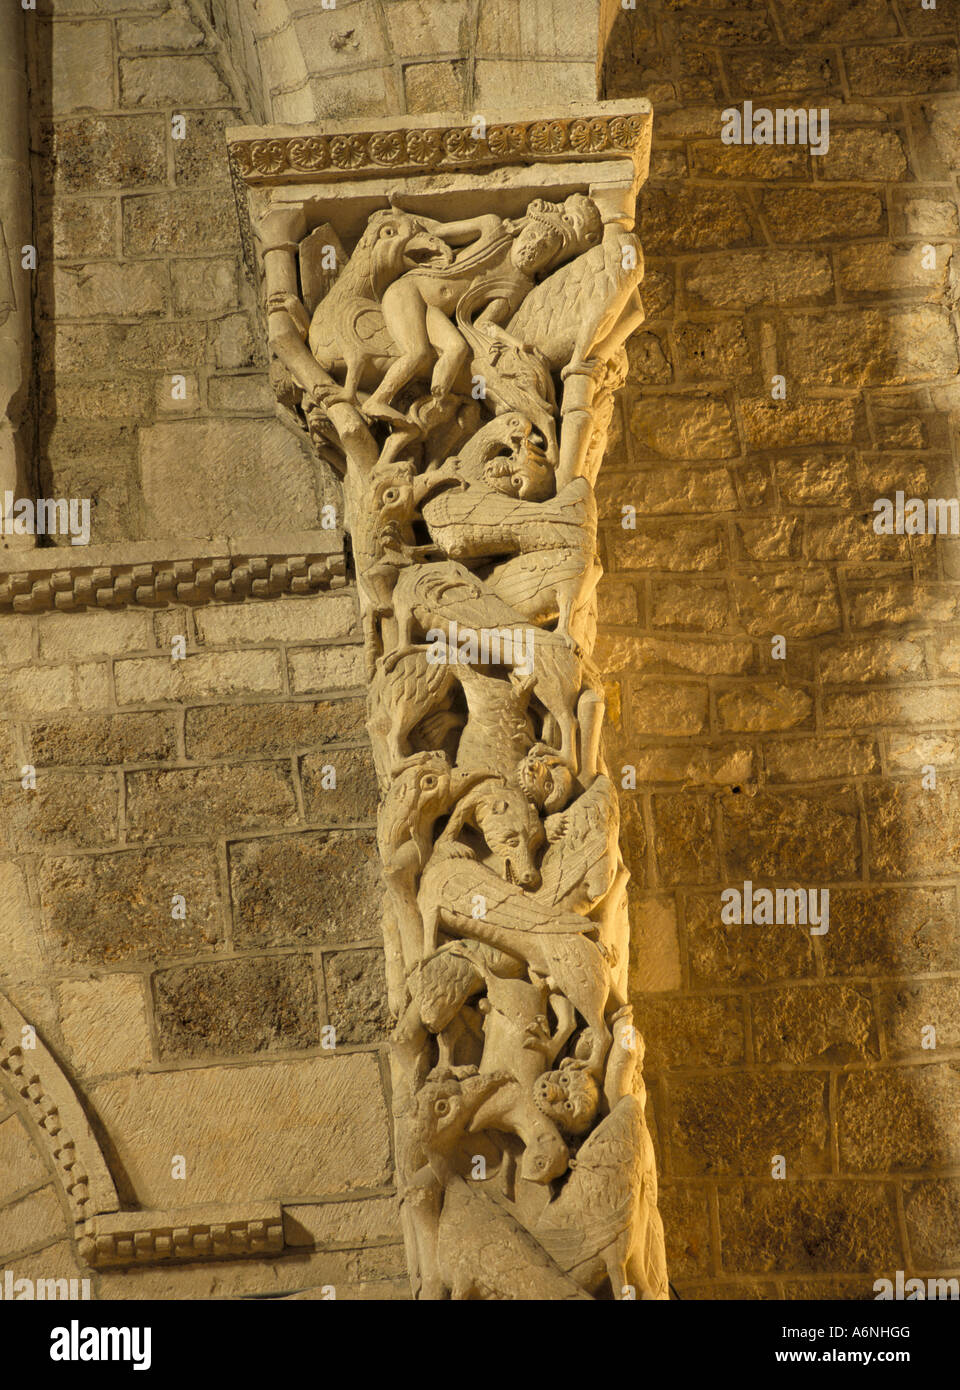 La sculpture médiévale sur un pilier au sein de l'église Eglise St Maur St Maur Martel Midi Pyrenees France Europe Banque D'Images